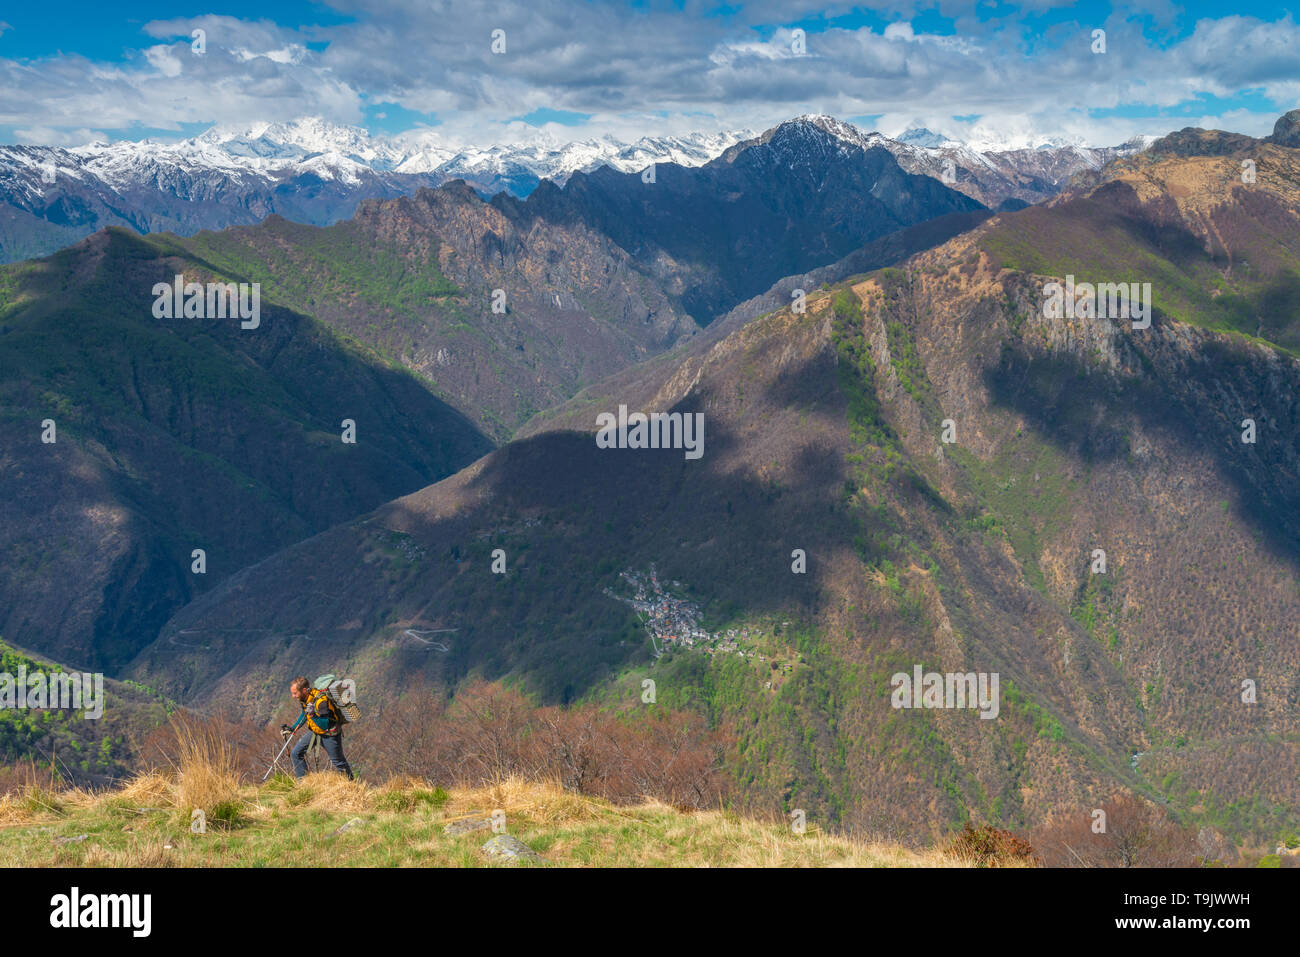 Männliche Wanderer, Wandern, Backpacker, männliche Trekker bis Wandern auf dem Berg. Schneebedeckte Berge im Hintergrund. Wanderer gegen Berge im Hintergrund. Stockfoto